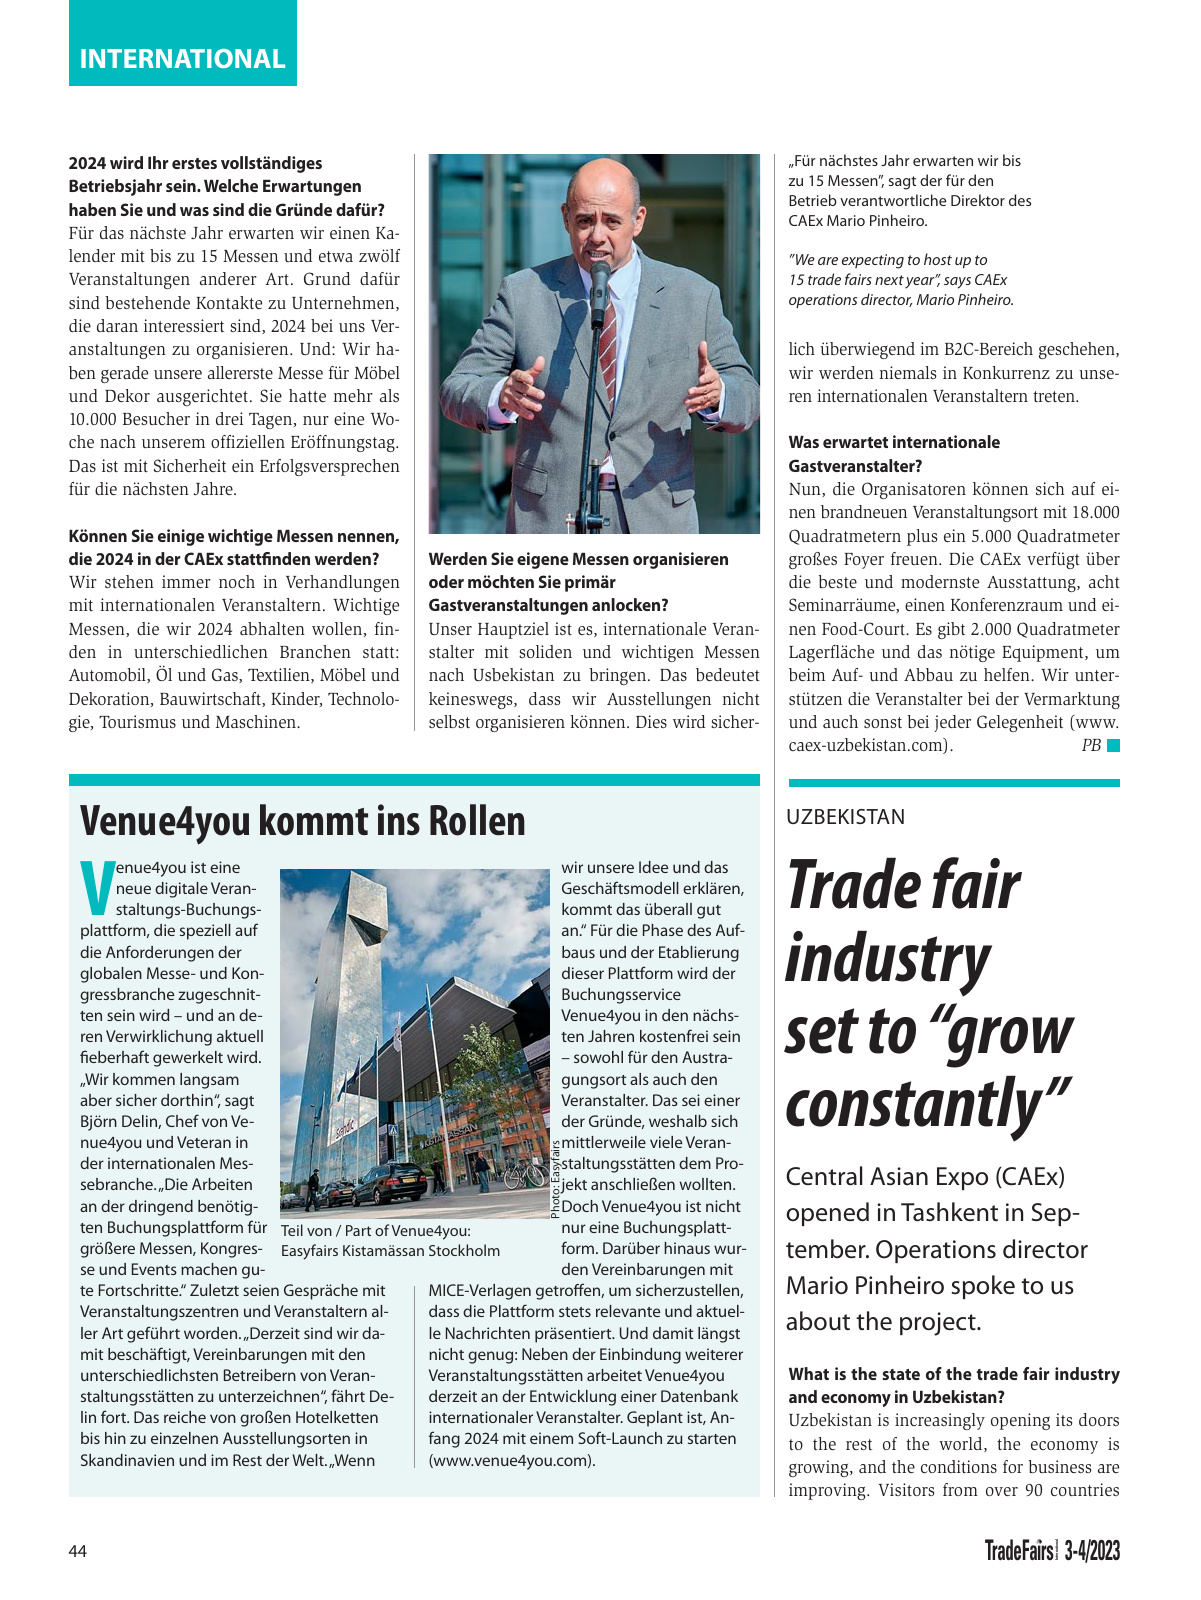 Vorschau TFI Trade-Fairs-International 03/2023 Seite 44